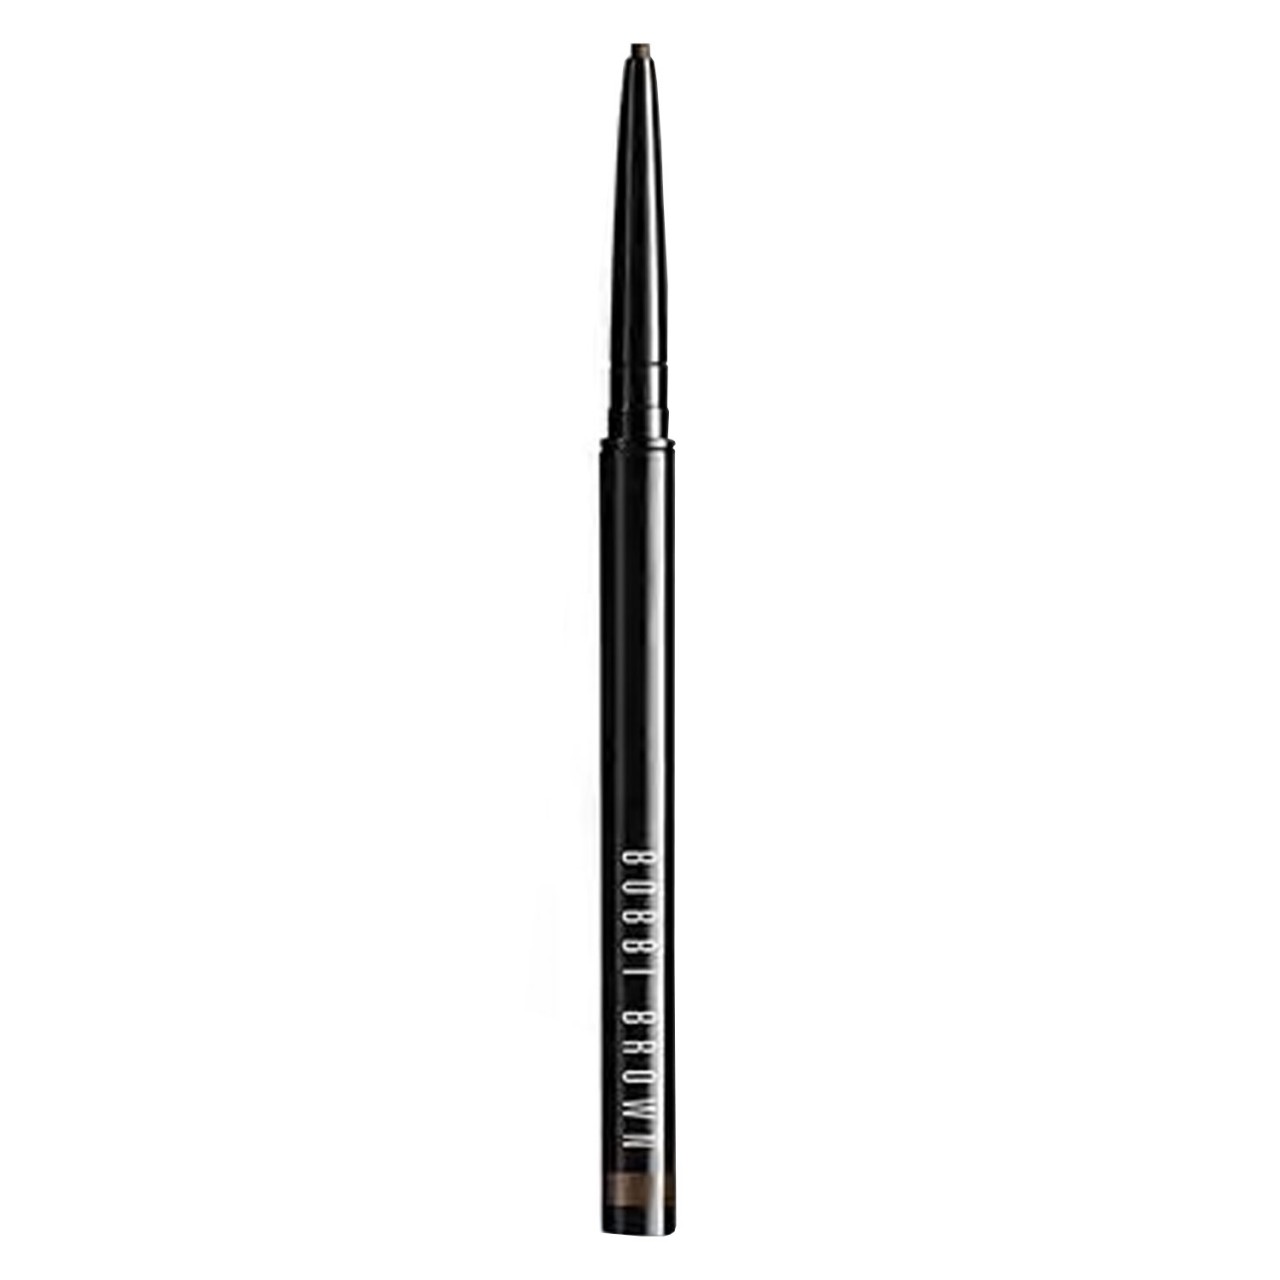 BB Eyeliner - Long-Wear Waterproof Liner Black Chocolate